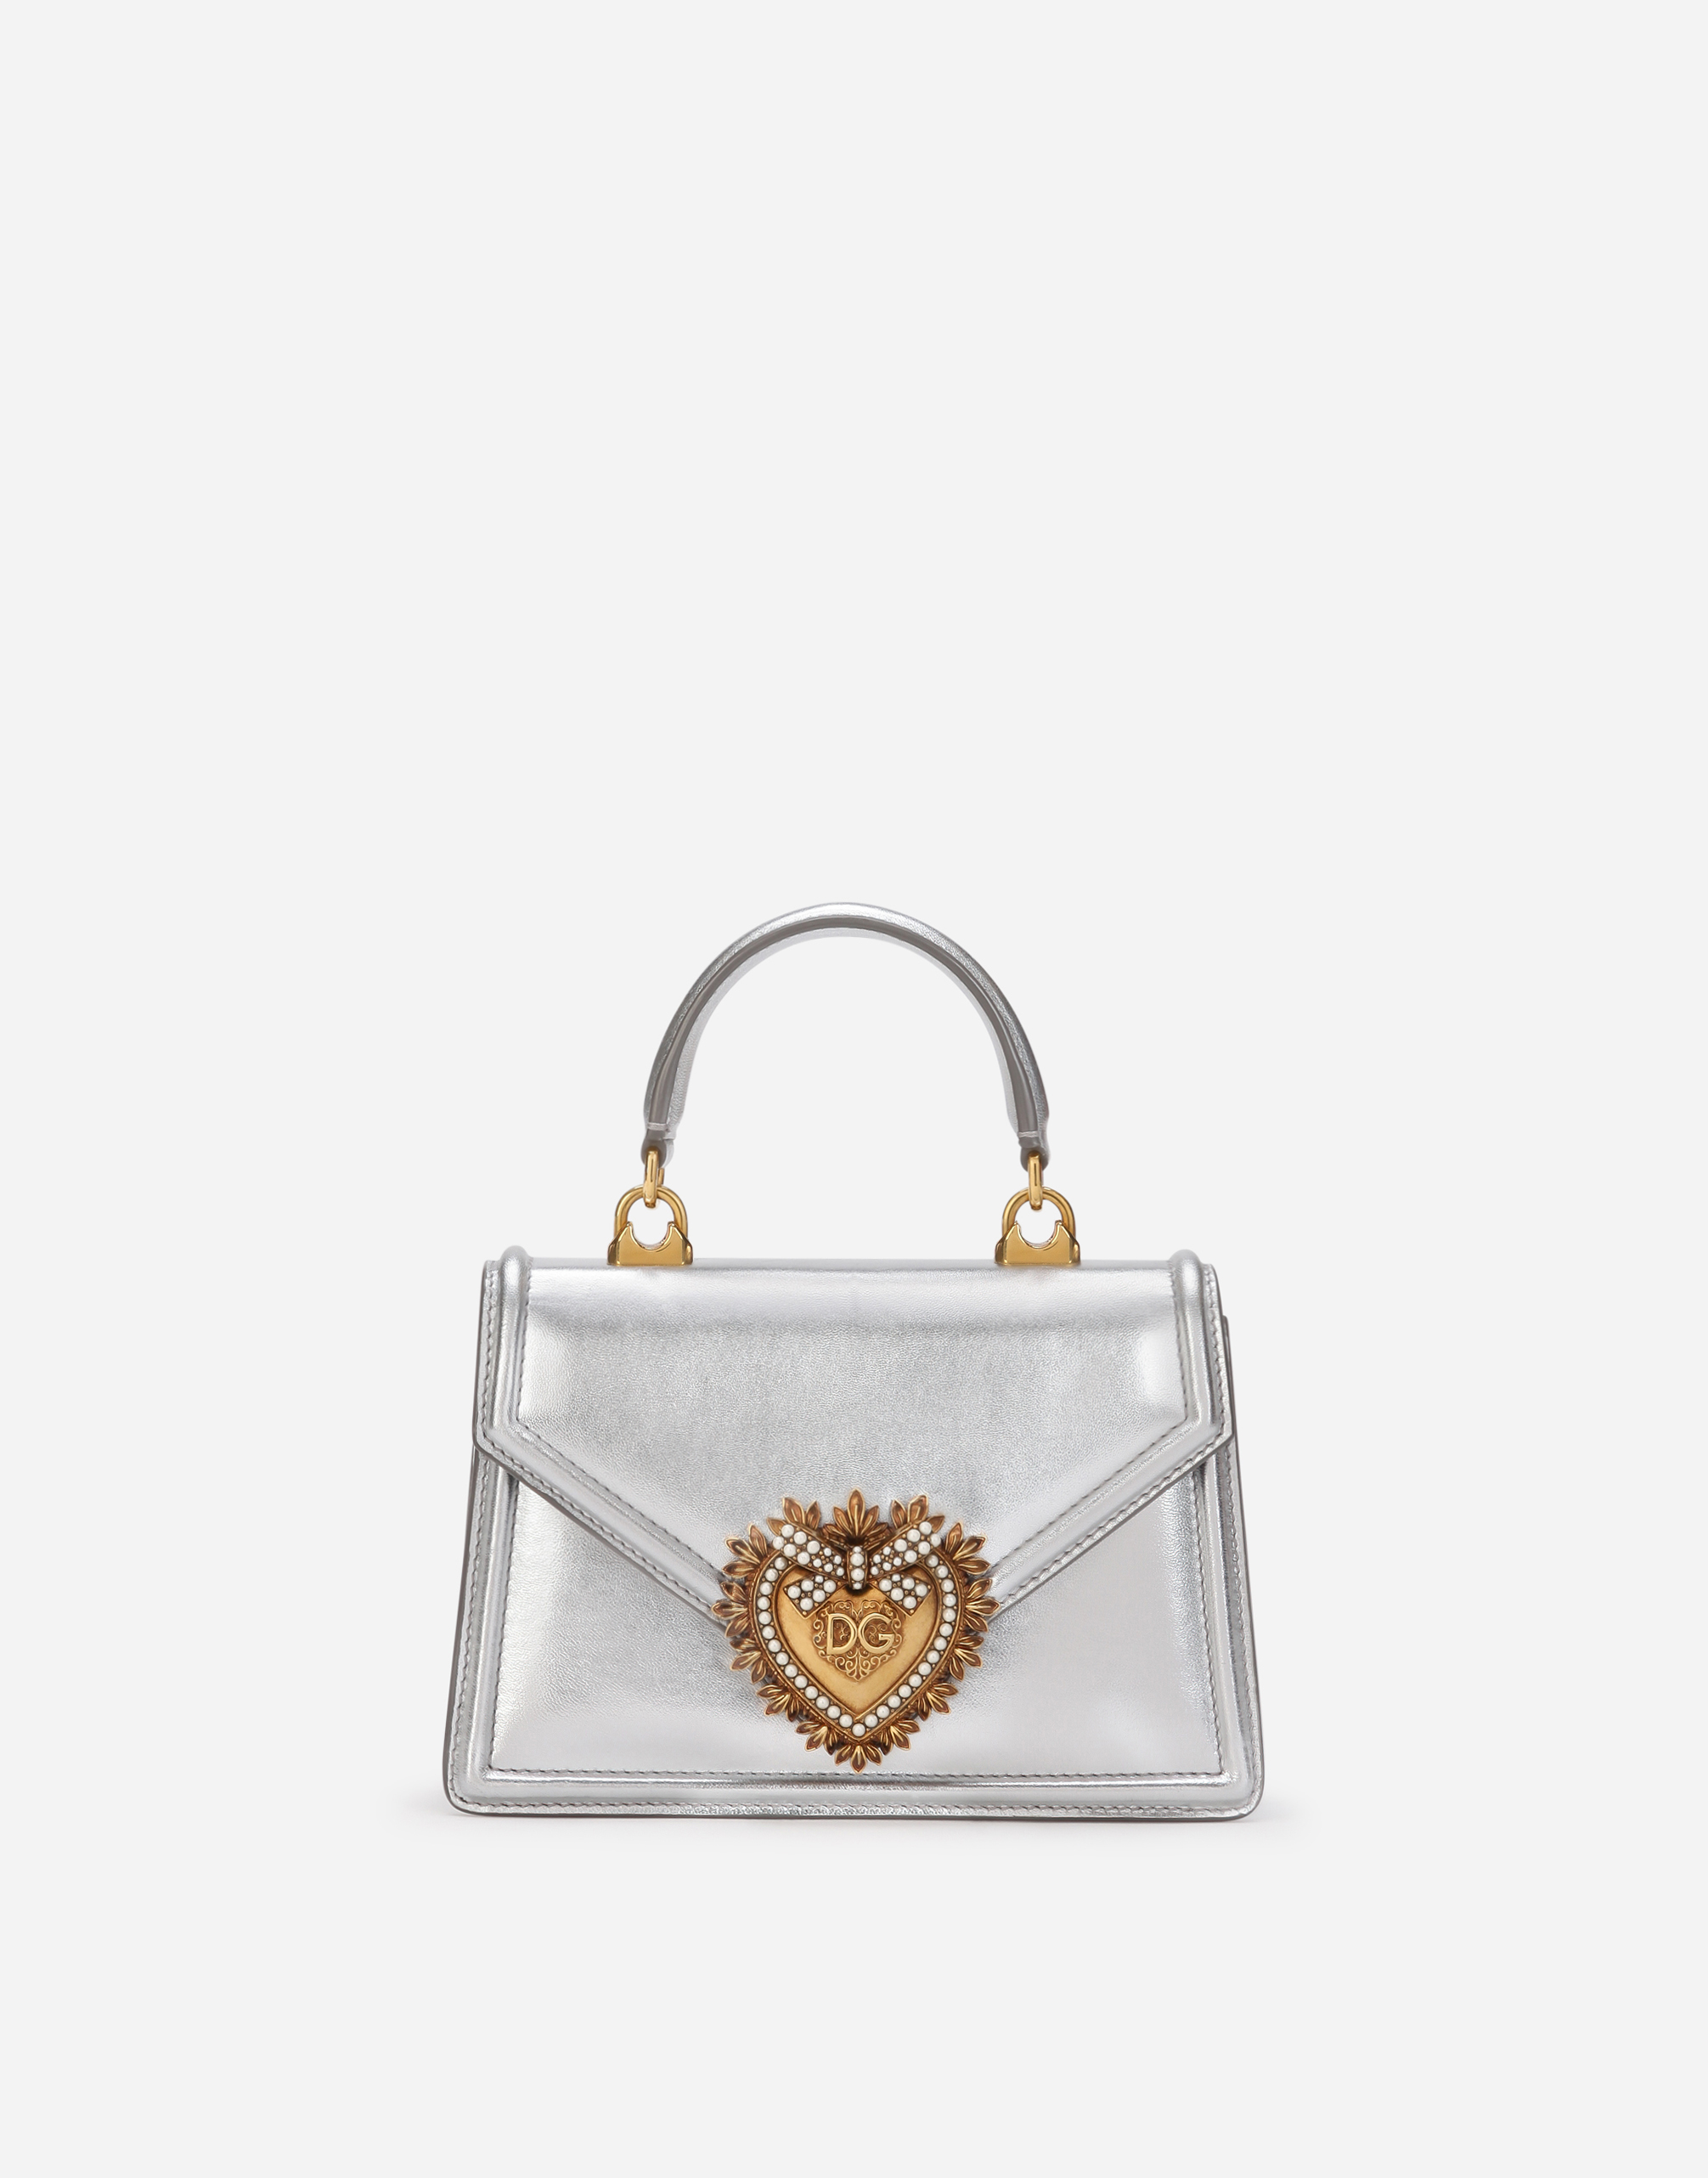 Small Devotion bag in mordore nappa leather in Silver